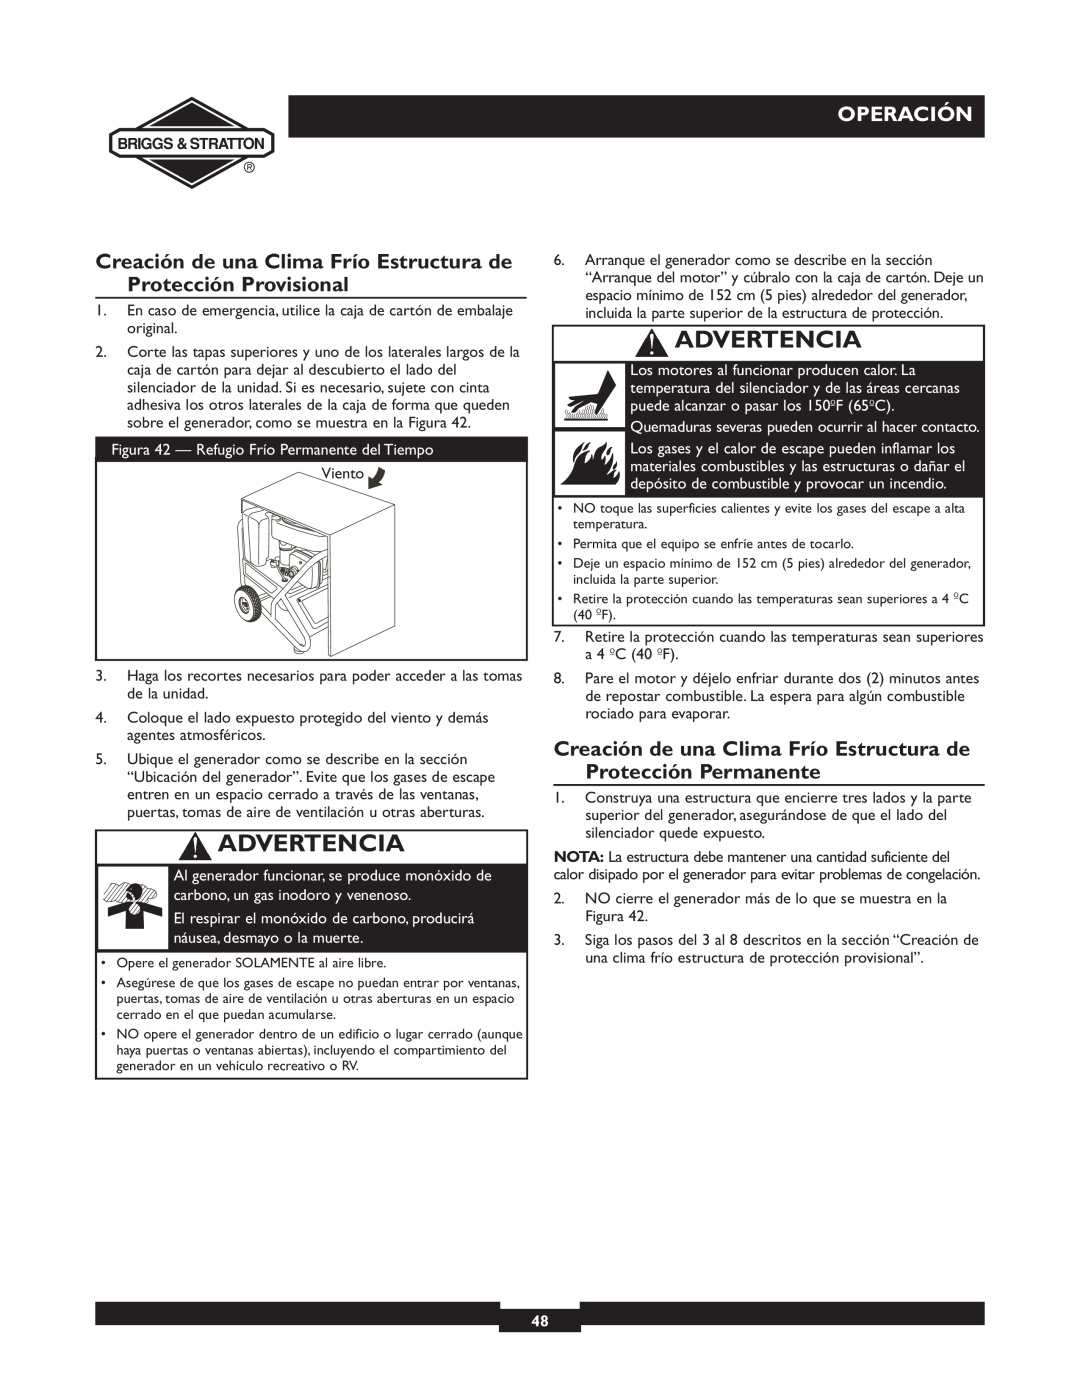 Briggs & Stratton 01894-1 manual Creación de una Clima Frío Estructura de Protección Provisional, Advertencia, Operación 